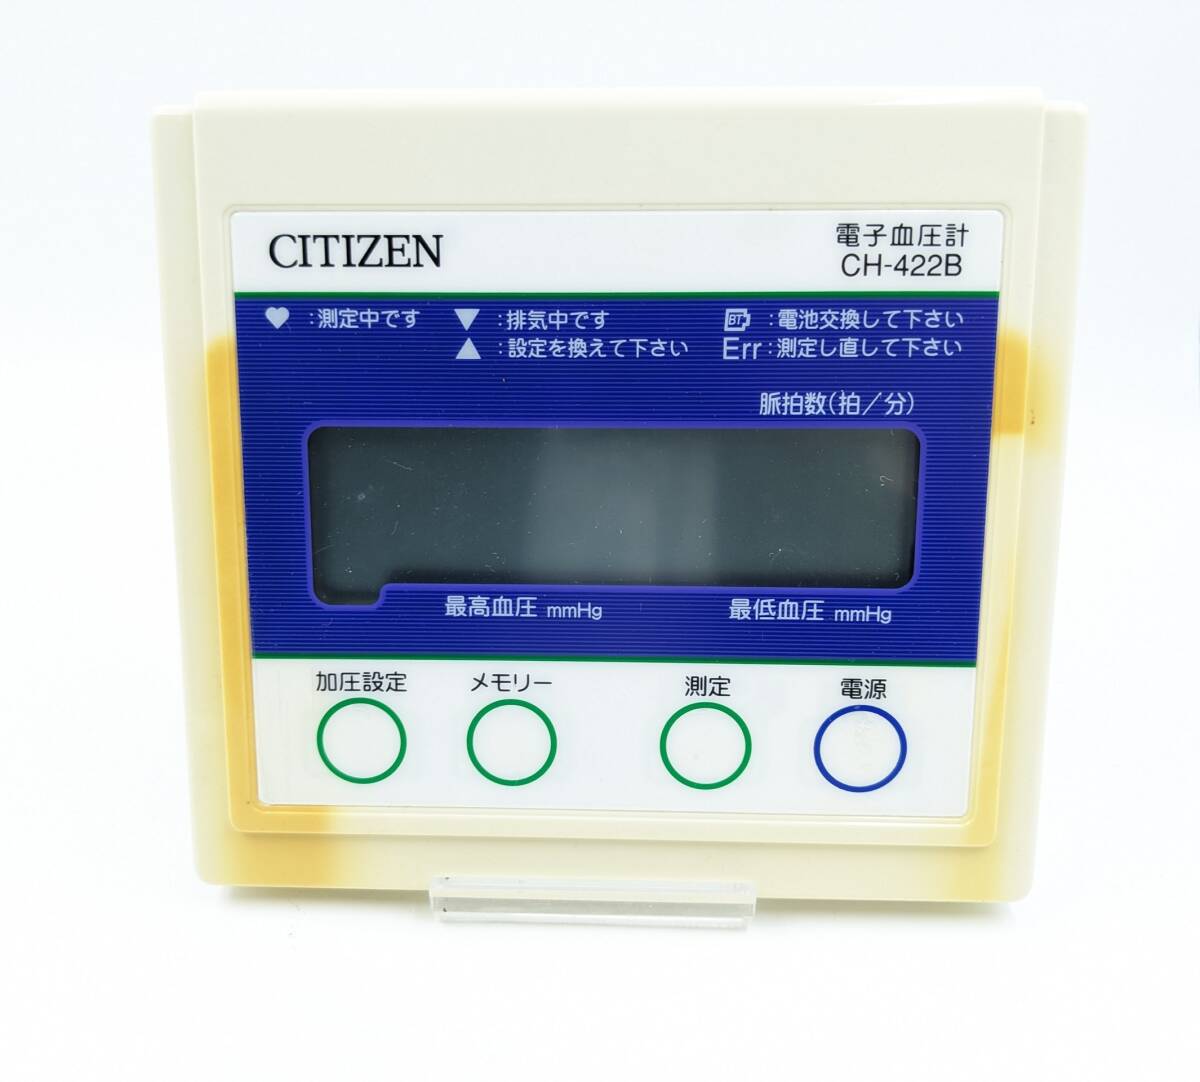 1 иен ~*CITIZEN Citizen удобно измерение электронный тонометр CH-422B* кровяное давление измерительный прибор здоровье для бытового использования легкий простой функционирование compact цифровой отображать электризация проверка settled 